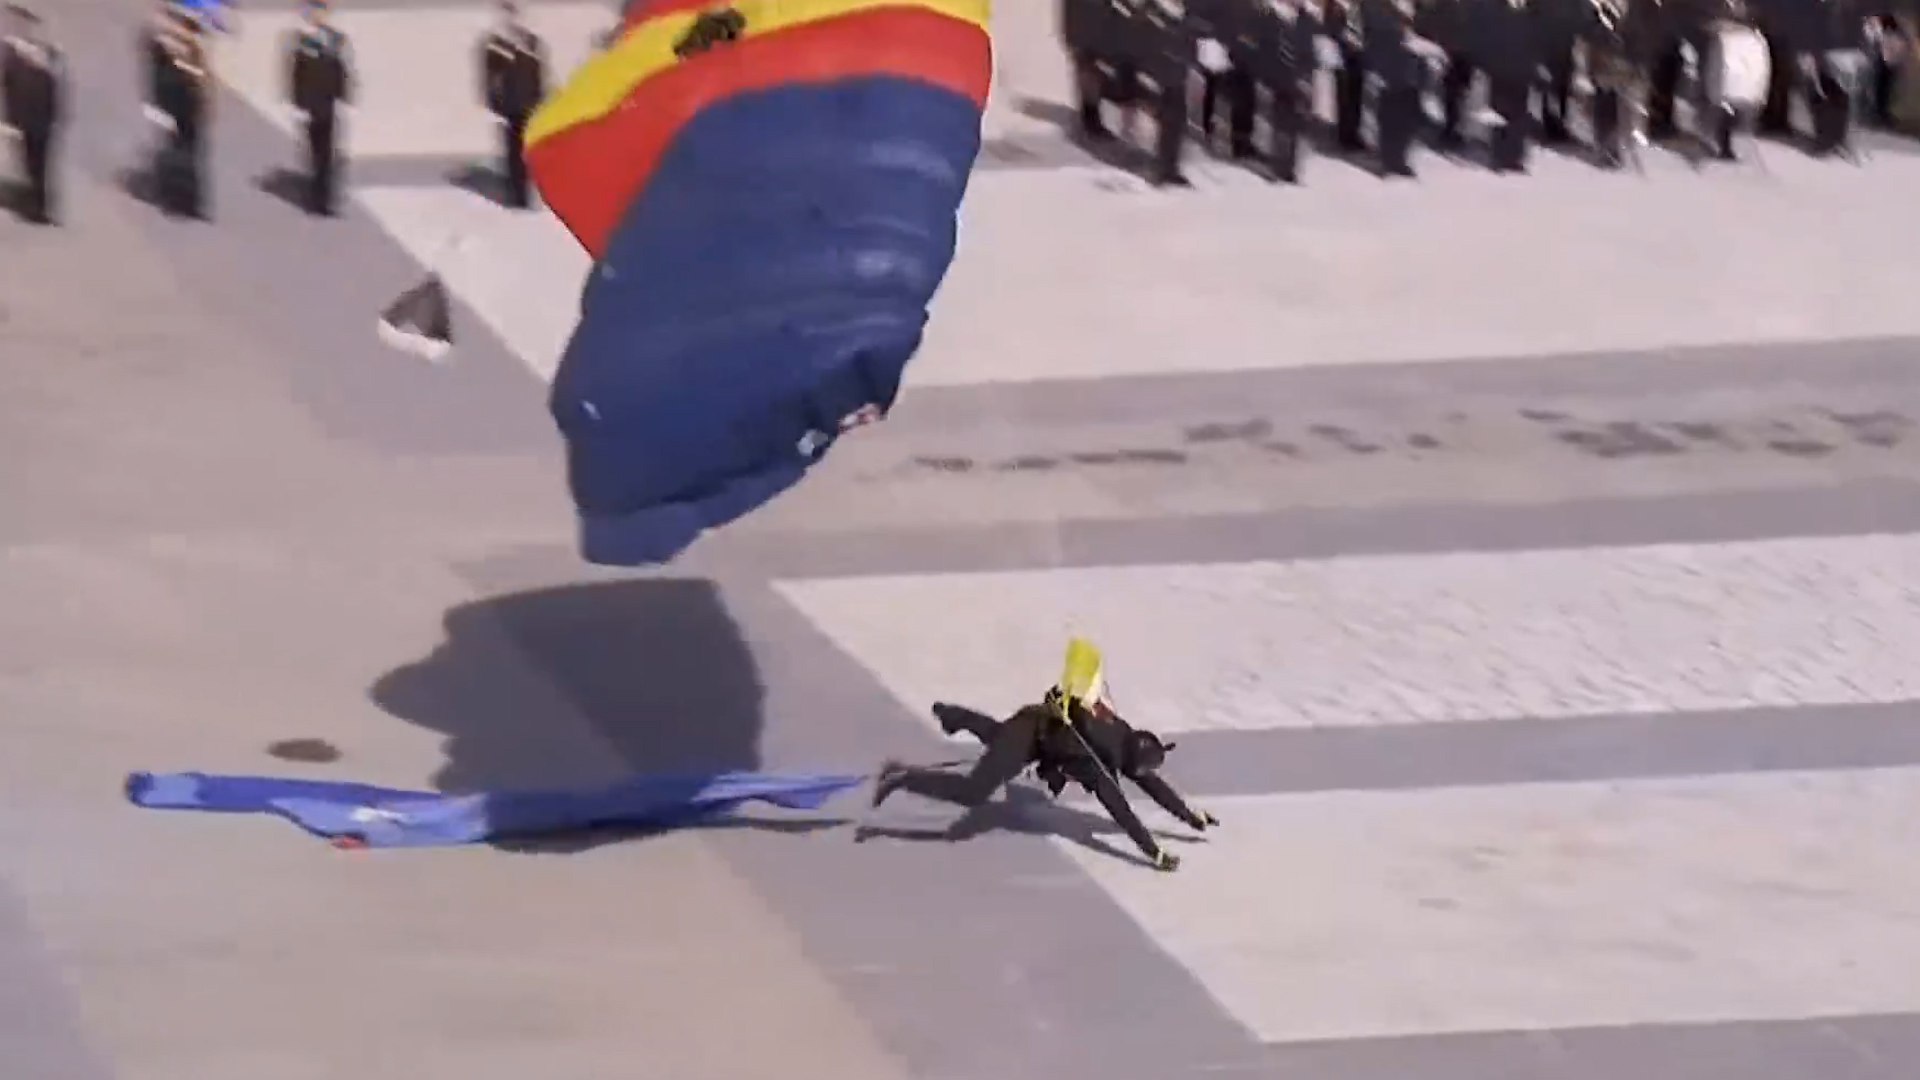 Un GEO sufre una cada al aterrizar en paracadas durante la celebracin del bicentenario de la Polica Nacional